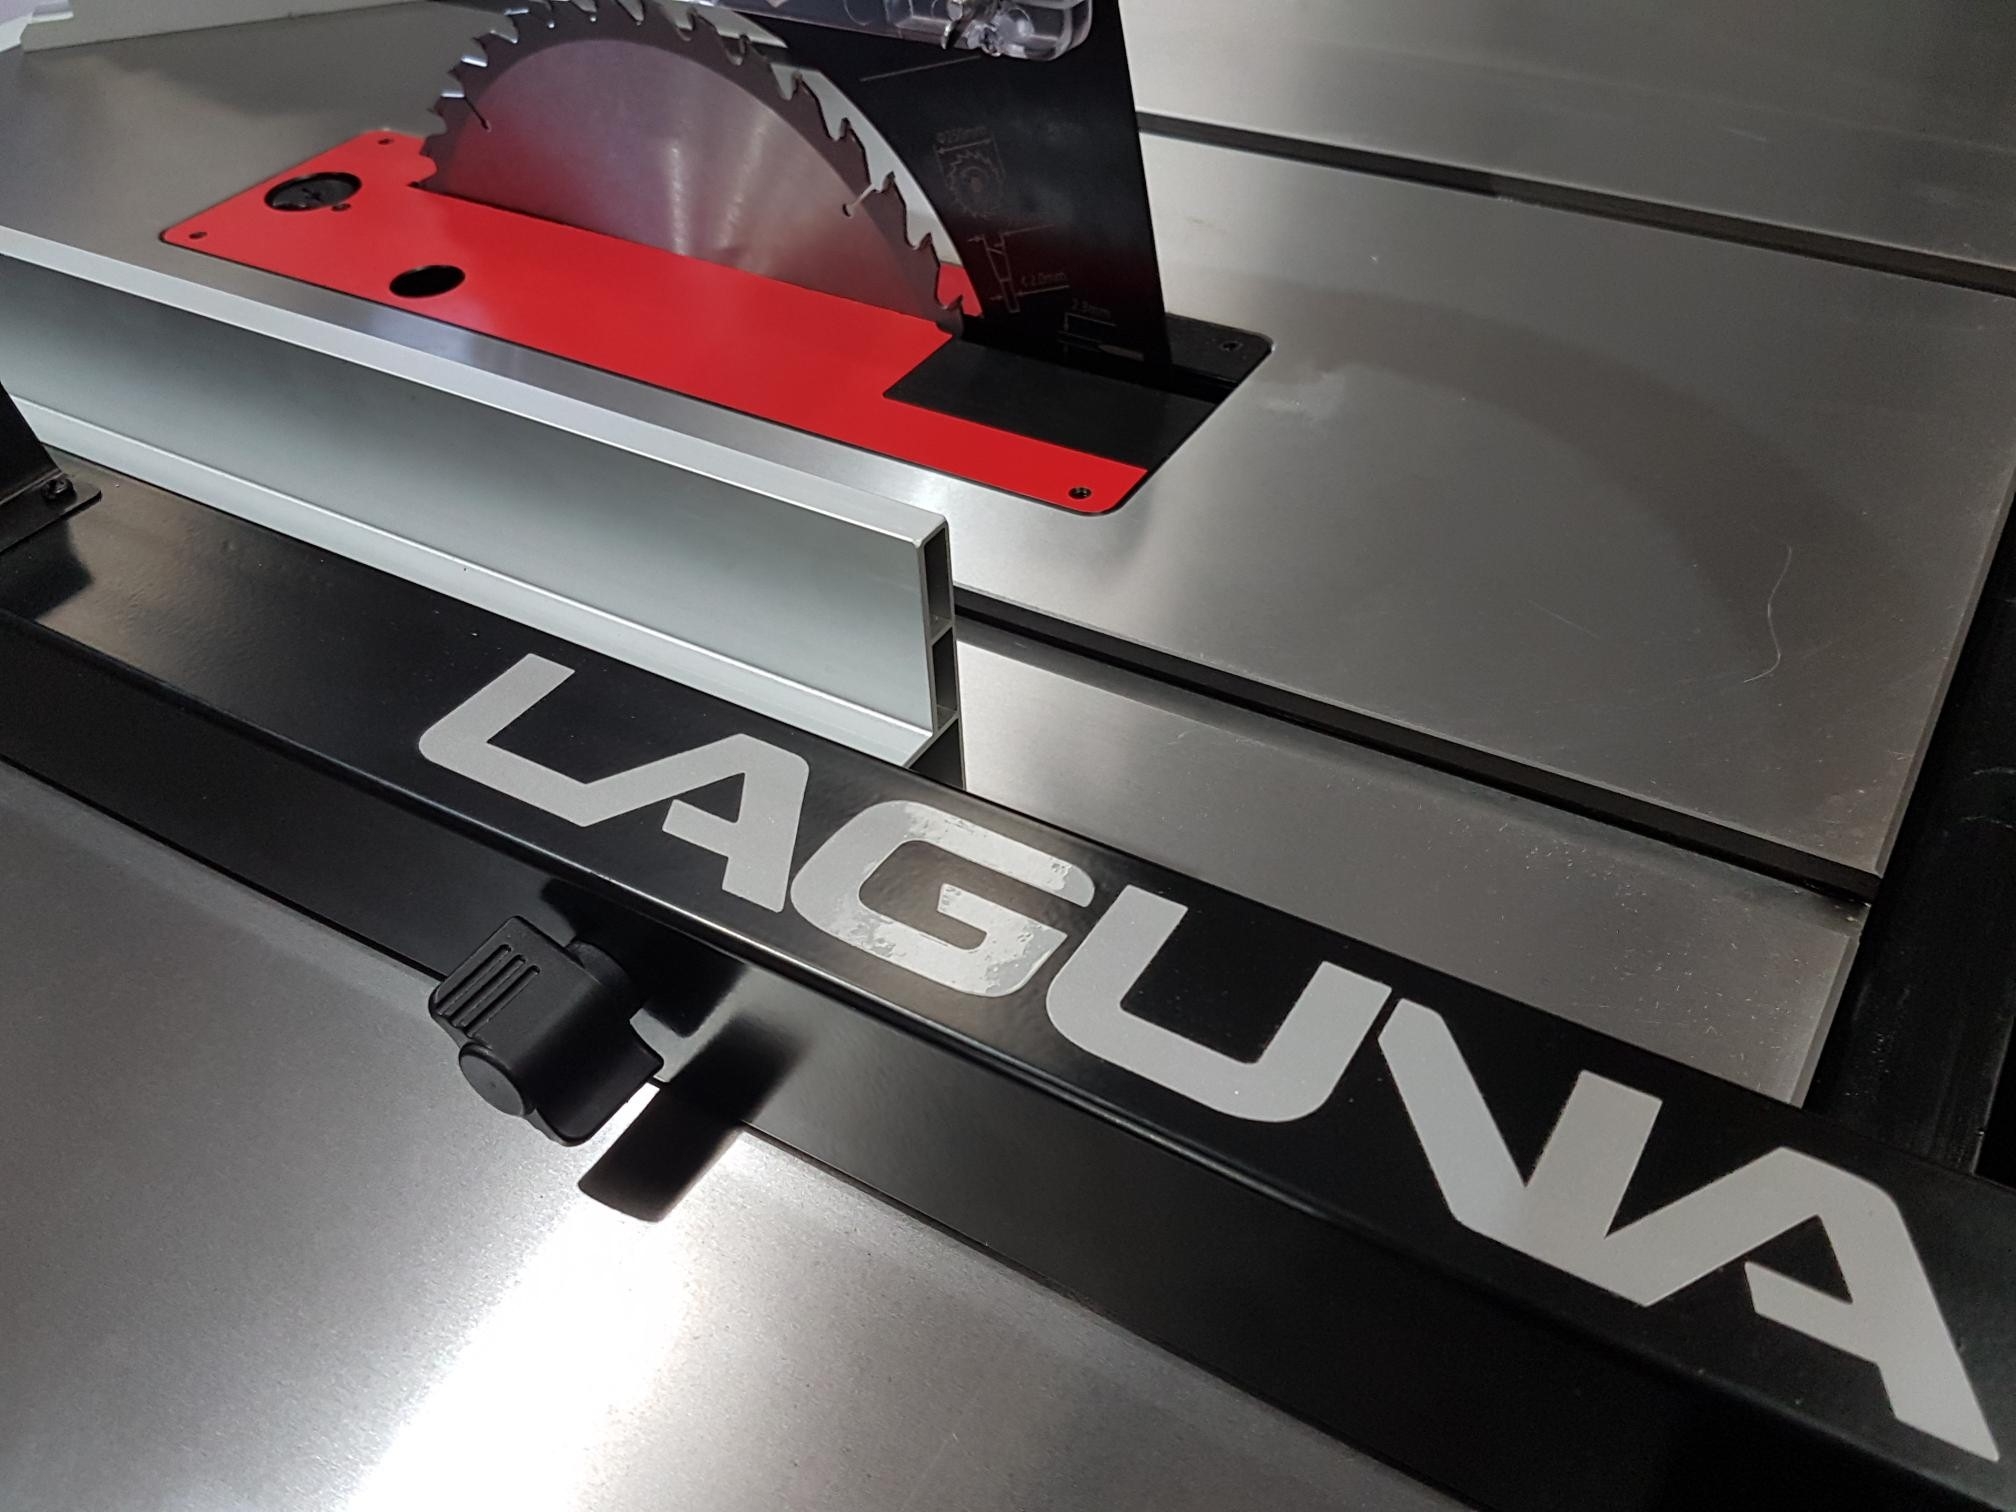 Laguna - Fusion 3 - Cabinet maker's -tyyppinen pöytäsaha - UUSI malli